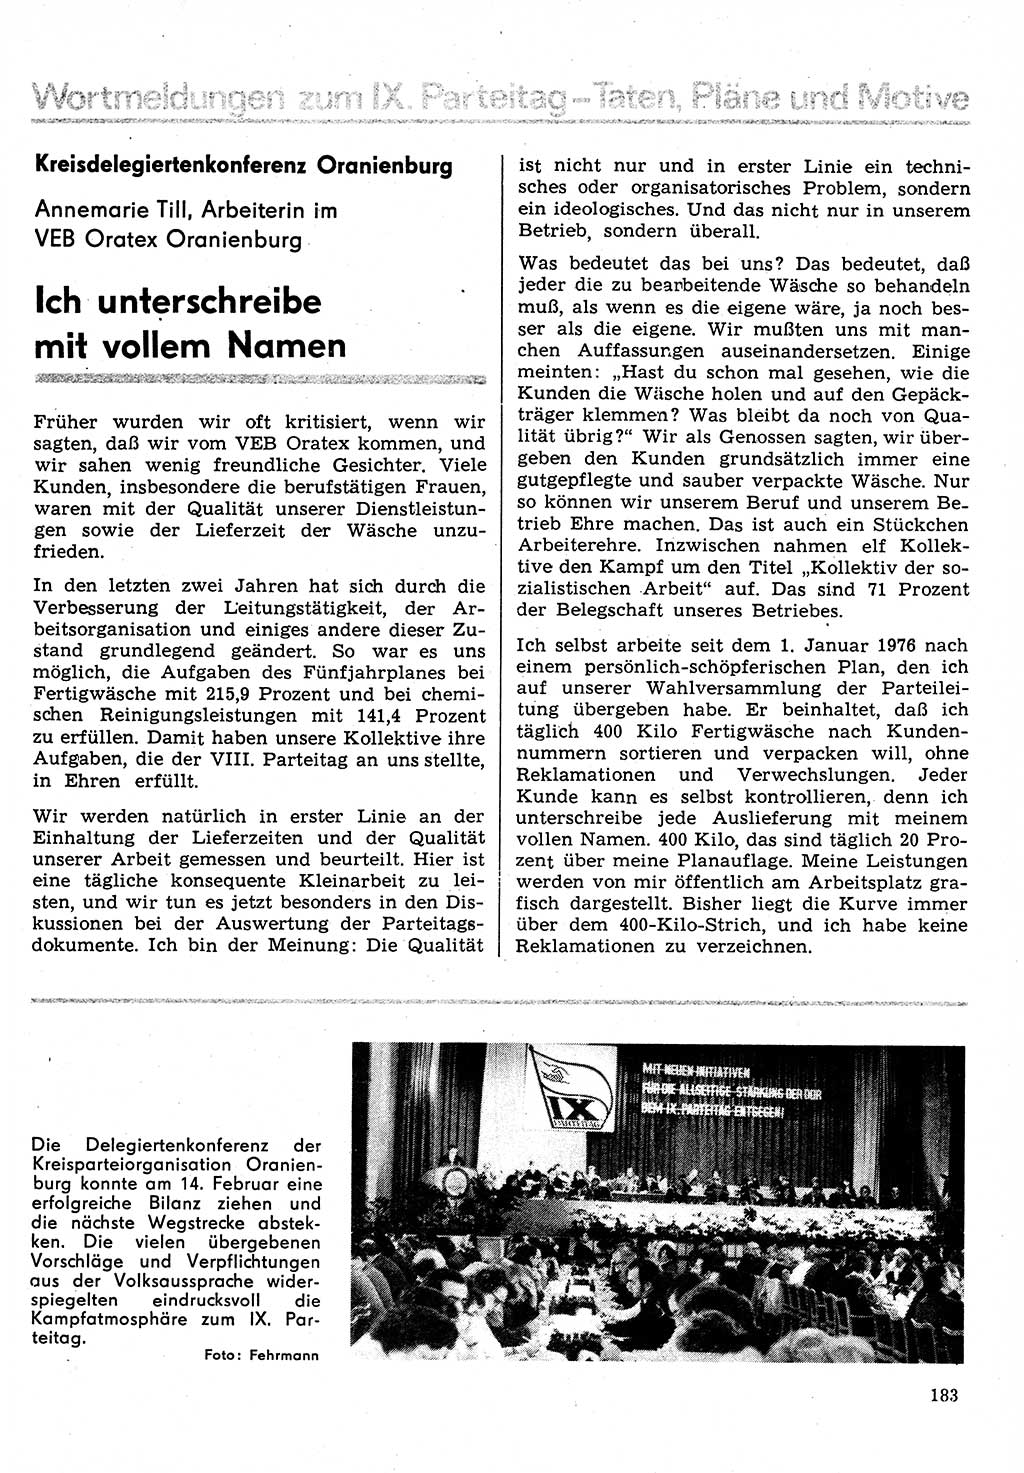 Neuer Weg (NW), Organ des Zentralkomitees (ZK) der SED (Sozialistische Einheitspartei Deutschlands) für Fragen des Parteilebens, 31. Jahrgang [Deutsche Demokratische Republik (DDR)] 1976, Seite 183 (NW ZK SED DDR 1976, S. 183)